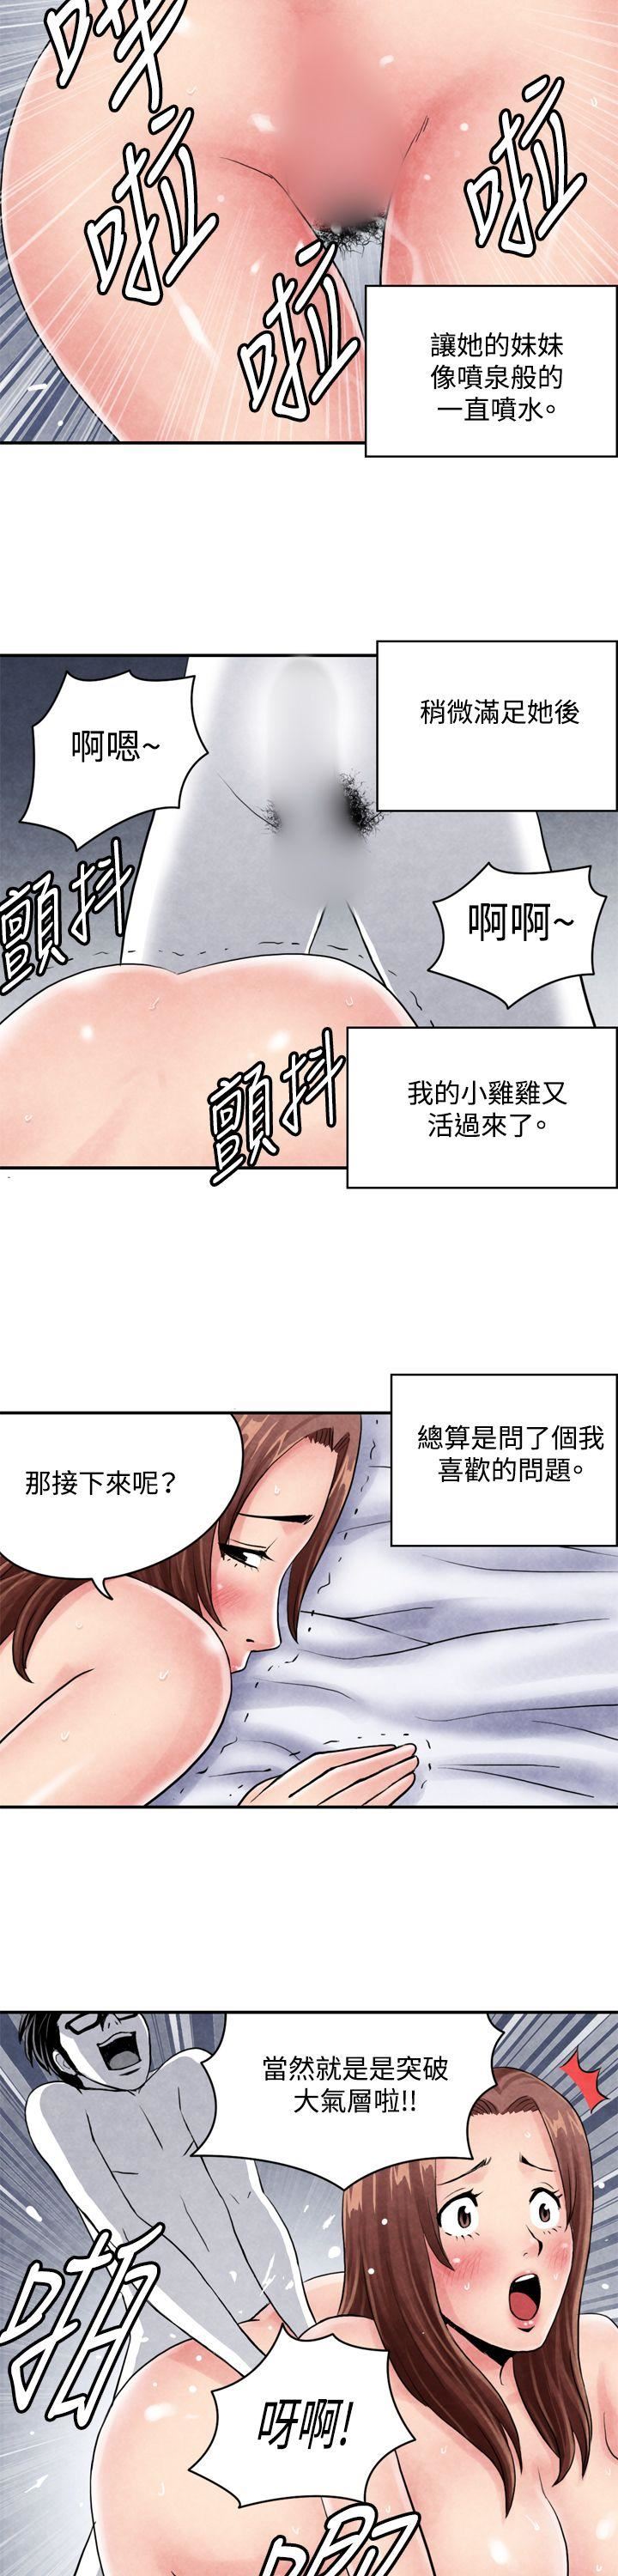 韩国污漫画 生物學的女性攻略法 CASE03-2.一夜情成功记 6